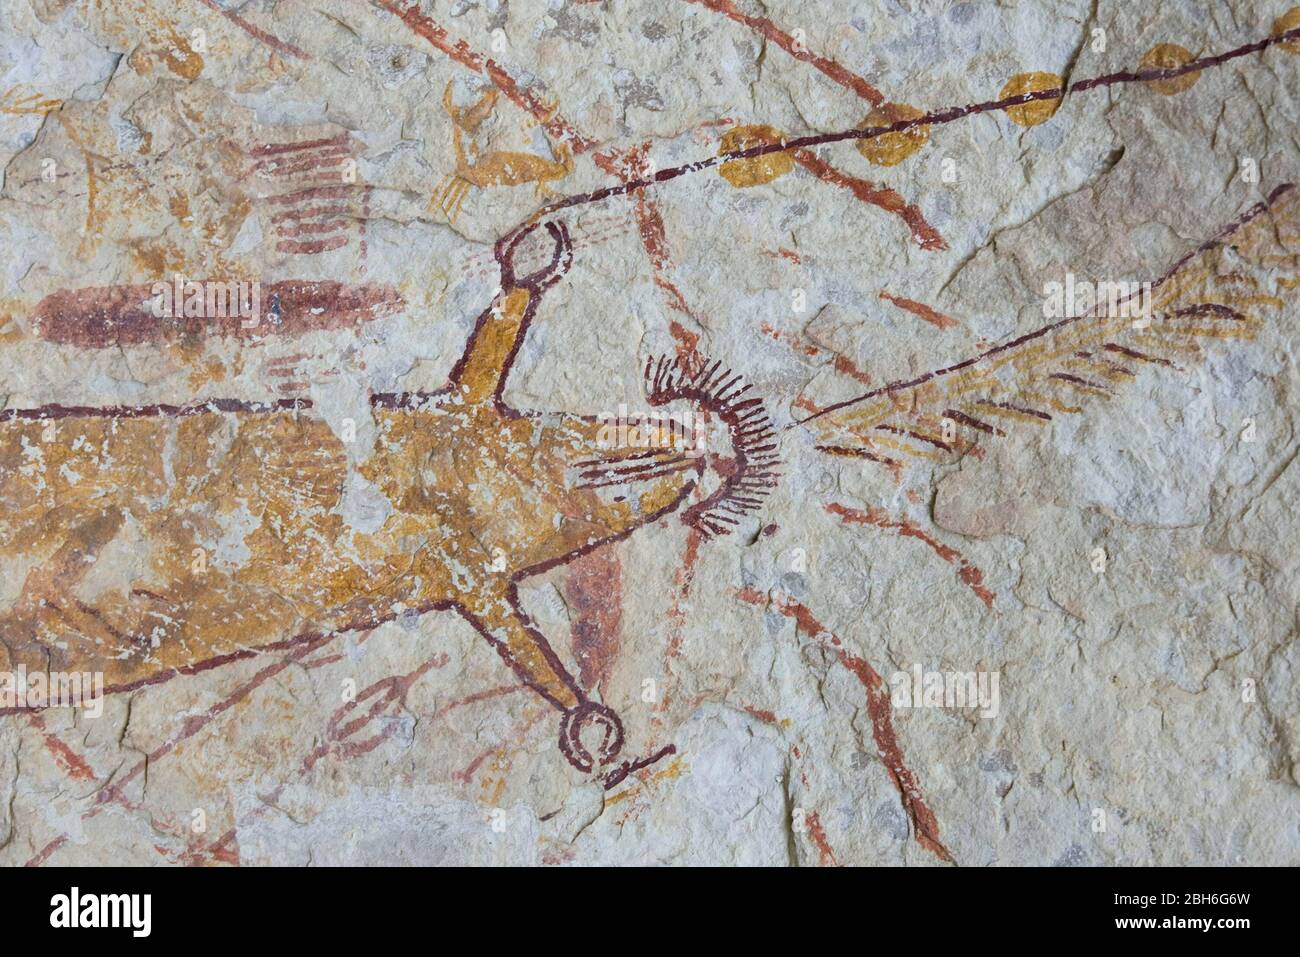 Comstock, Texas USA: Pinturas antiguas hechas por indios nativos entre  4.000 y 6.000 años atrás en la región Trans-Pecos del oeste de Texas,  bordean las paredes de una cueva de propiedad privada